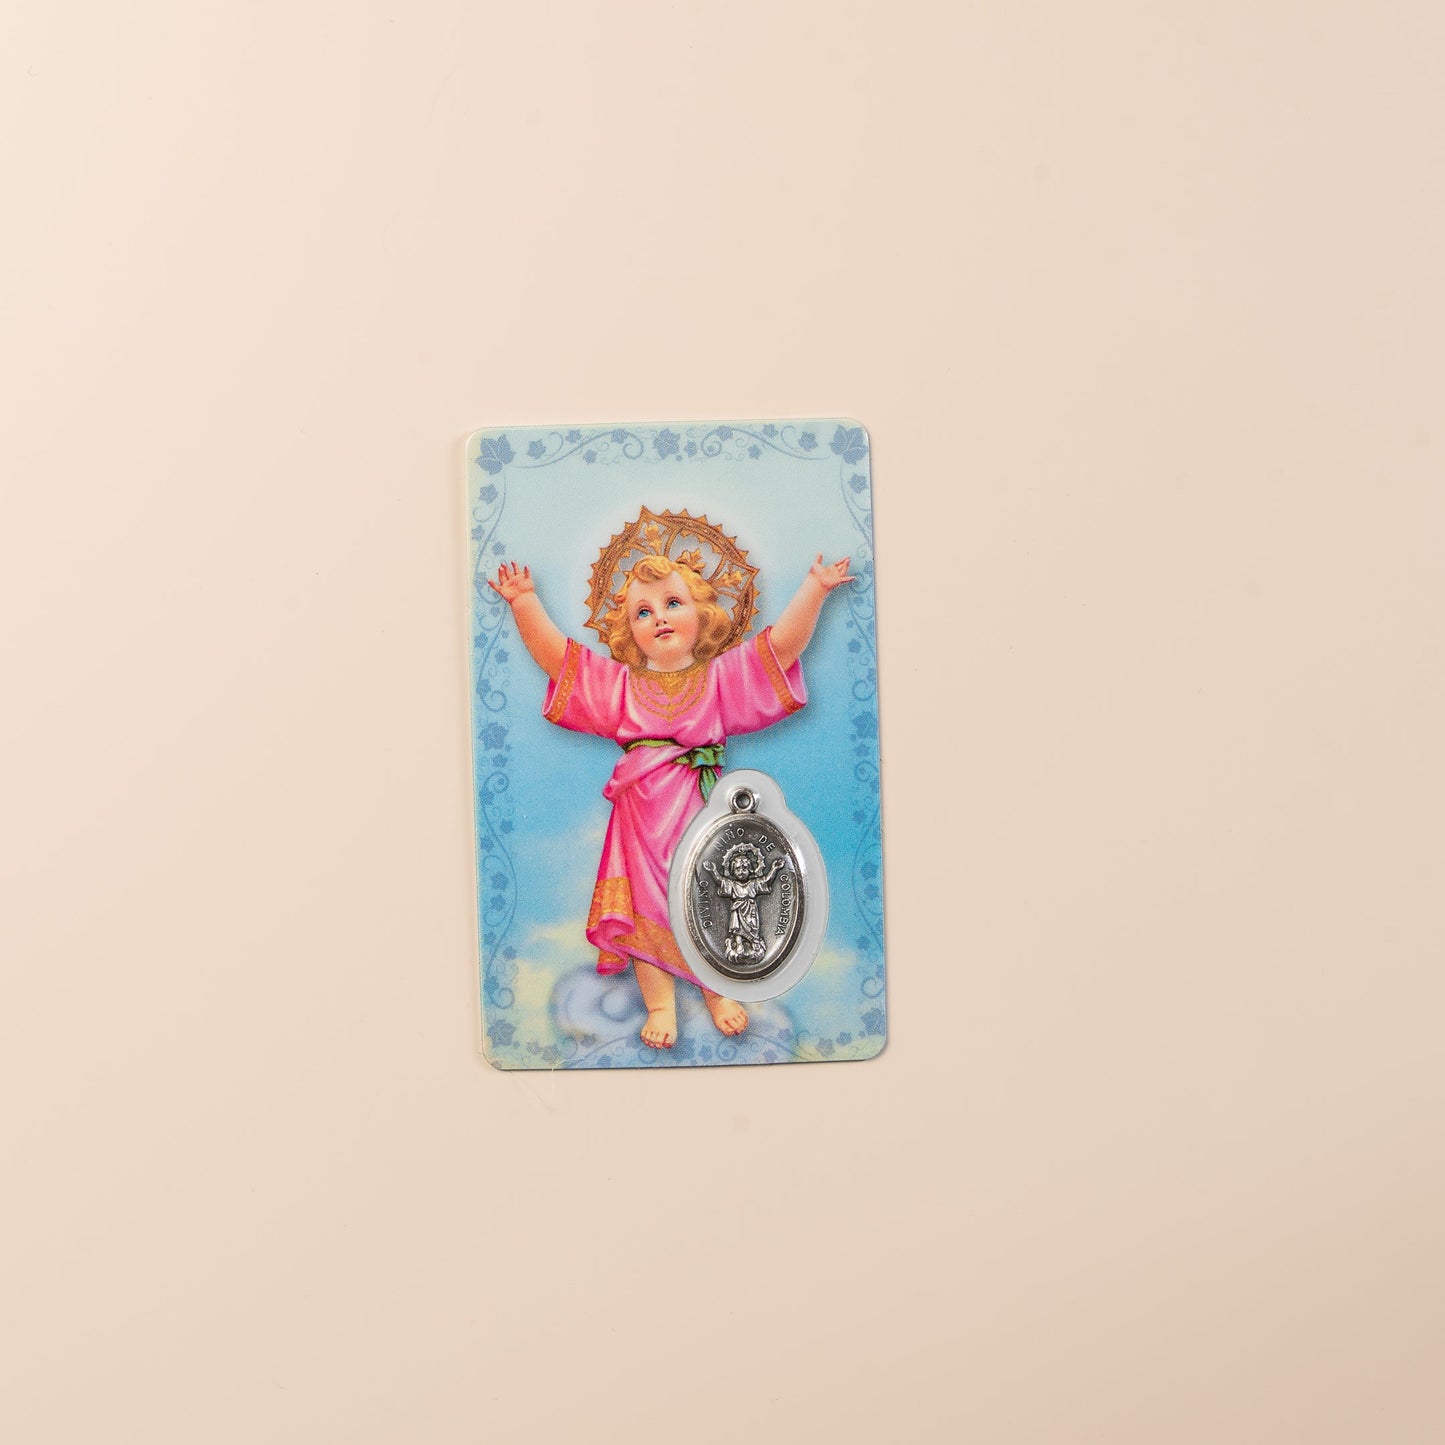 Baby Jesus prayer card